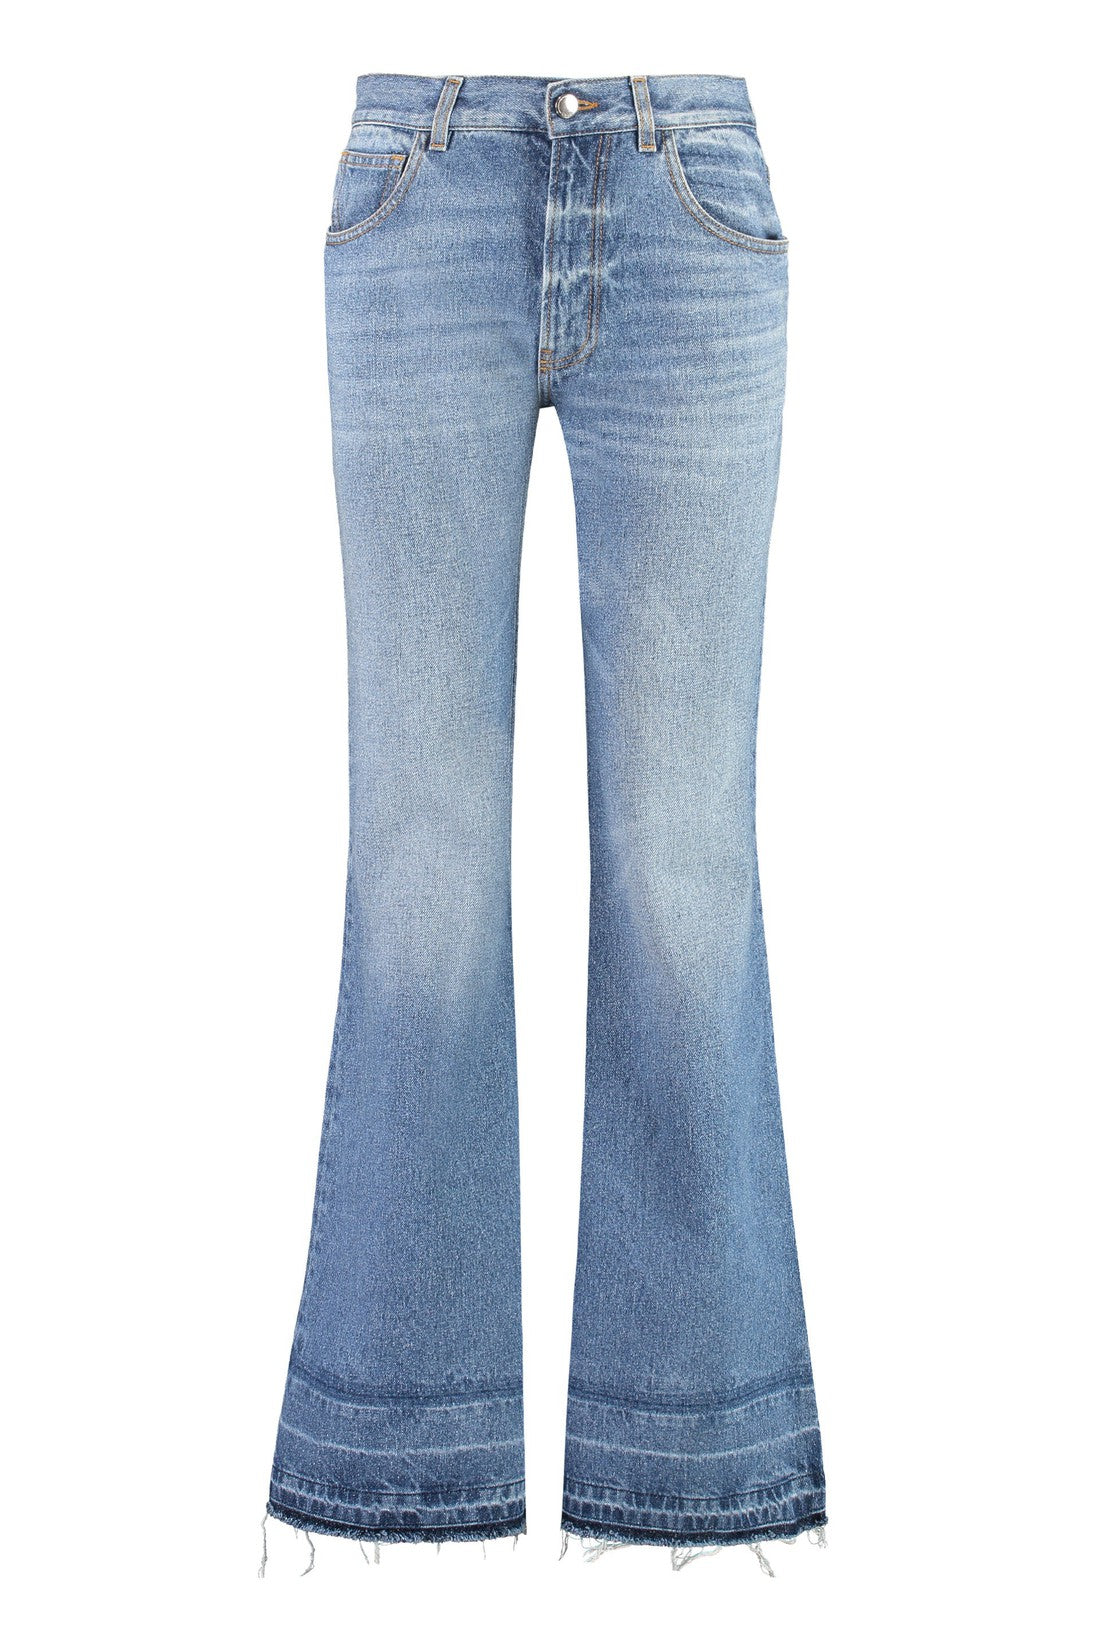 Chloé-OUTLET-SALE-Low-rise flared jeans-ARCHIVIST